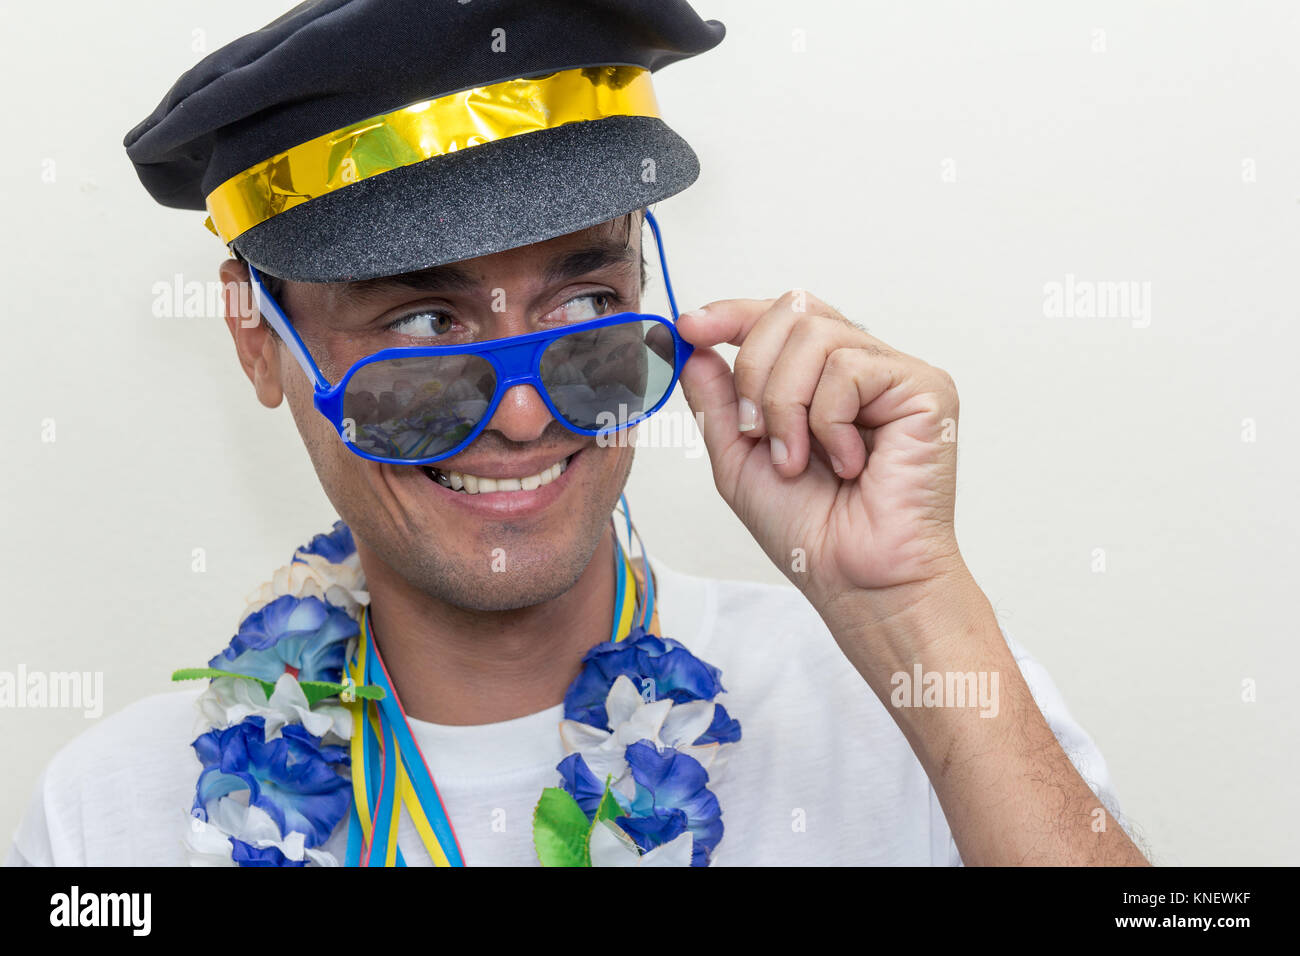 L'homme noir est habillé comme un capitaine ou pilote. Il porte des lunettes  de soleil et collier hawaïen à un carnaval partie. Il est à la recherche  sur le côté et sourit